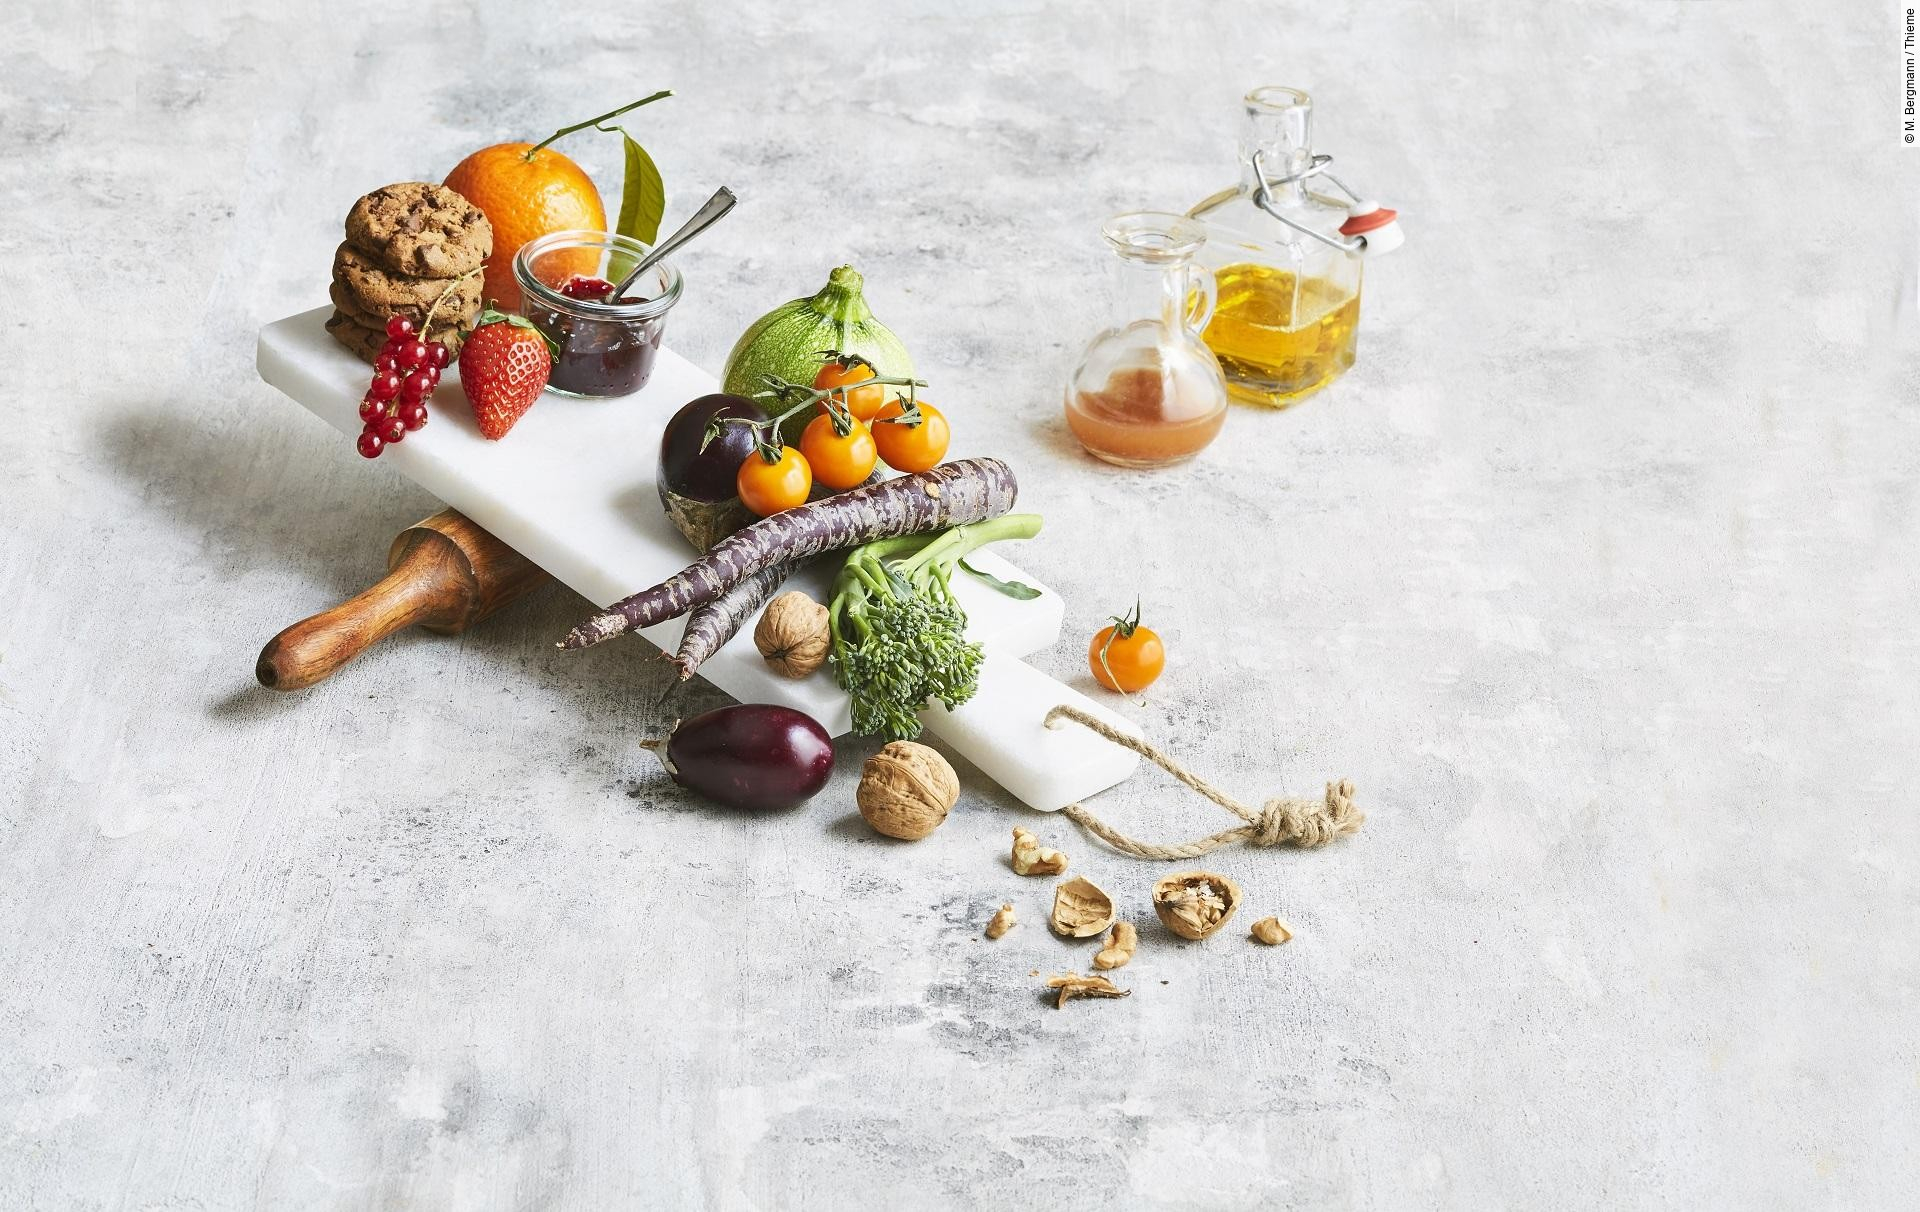 Obst, Gemüse, Marmelade, Nüsse, Cookies, Öl und Saft ästhetisch gruppiert auf weißem Untergrund